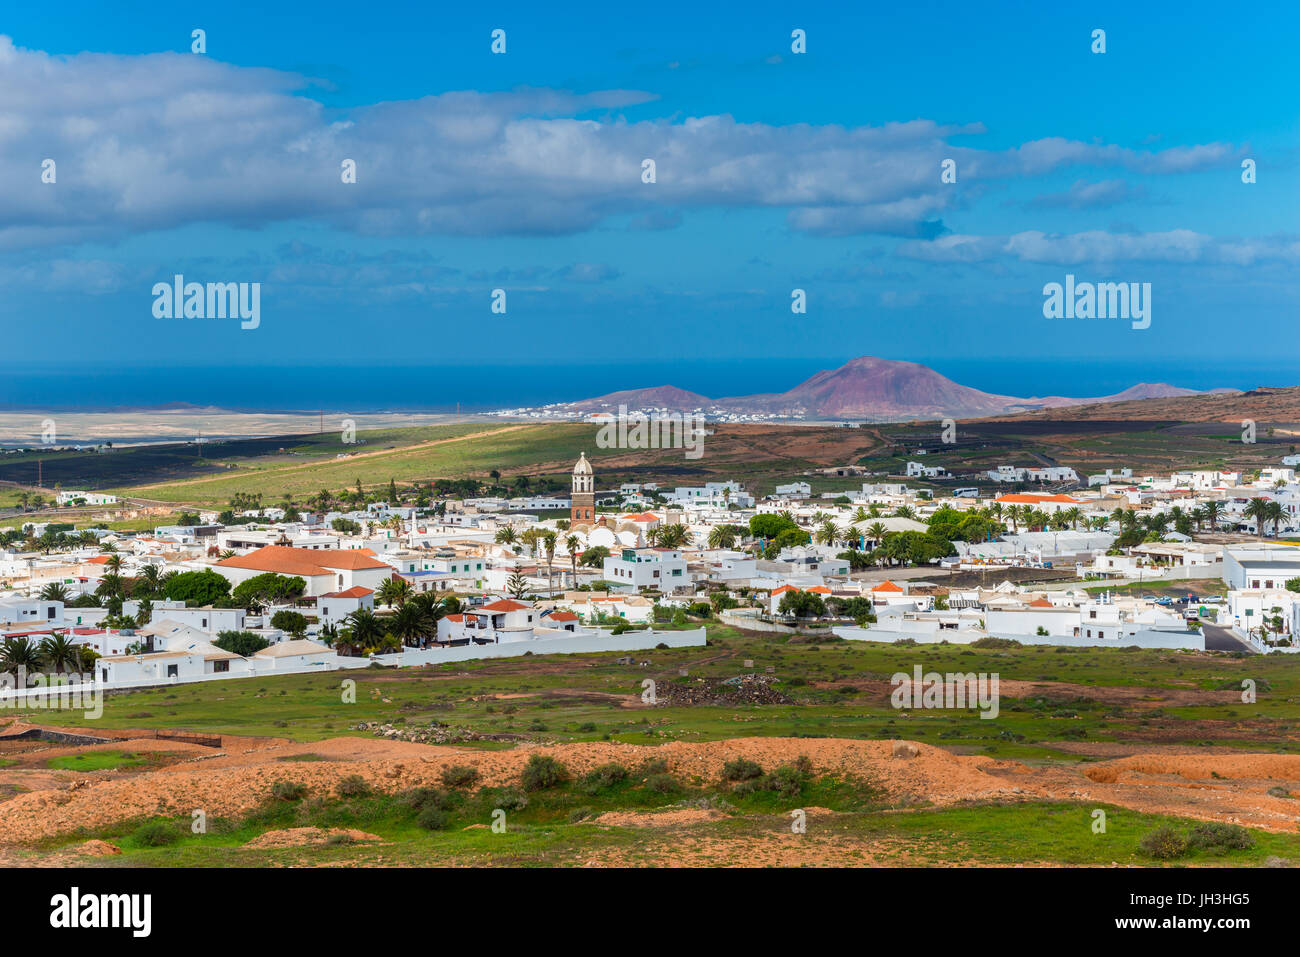 Villaggio di Teguise, Lanzarote, Isole Canarie, Spagna Foto Stock